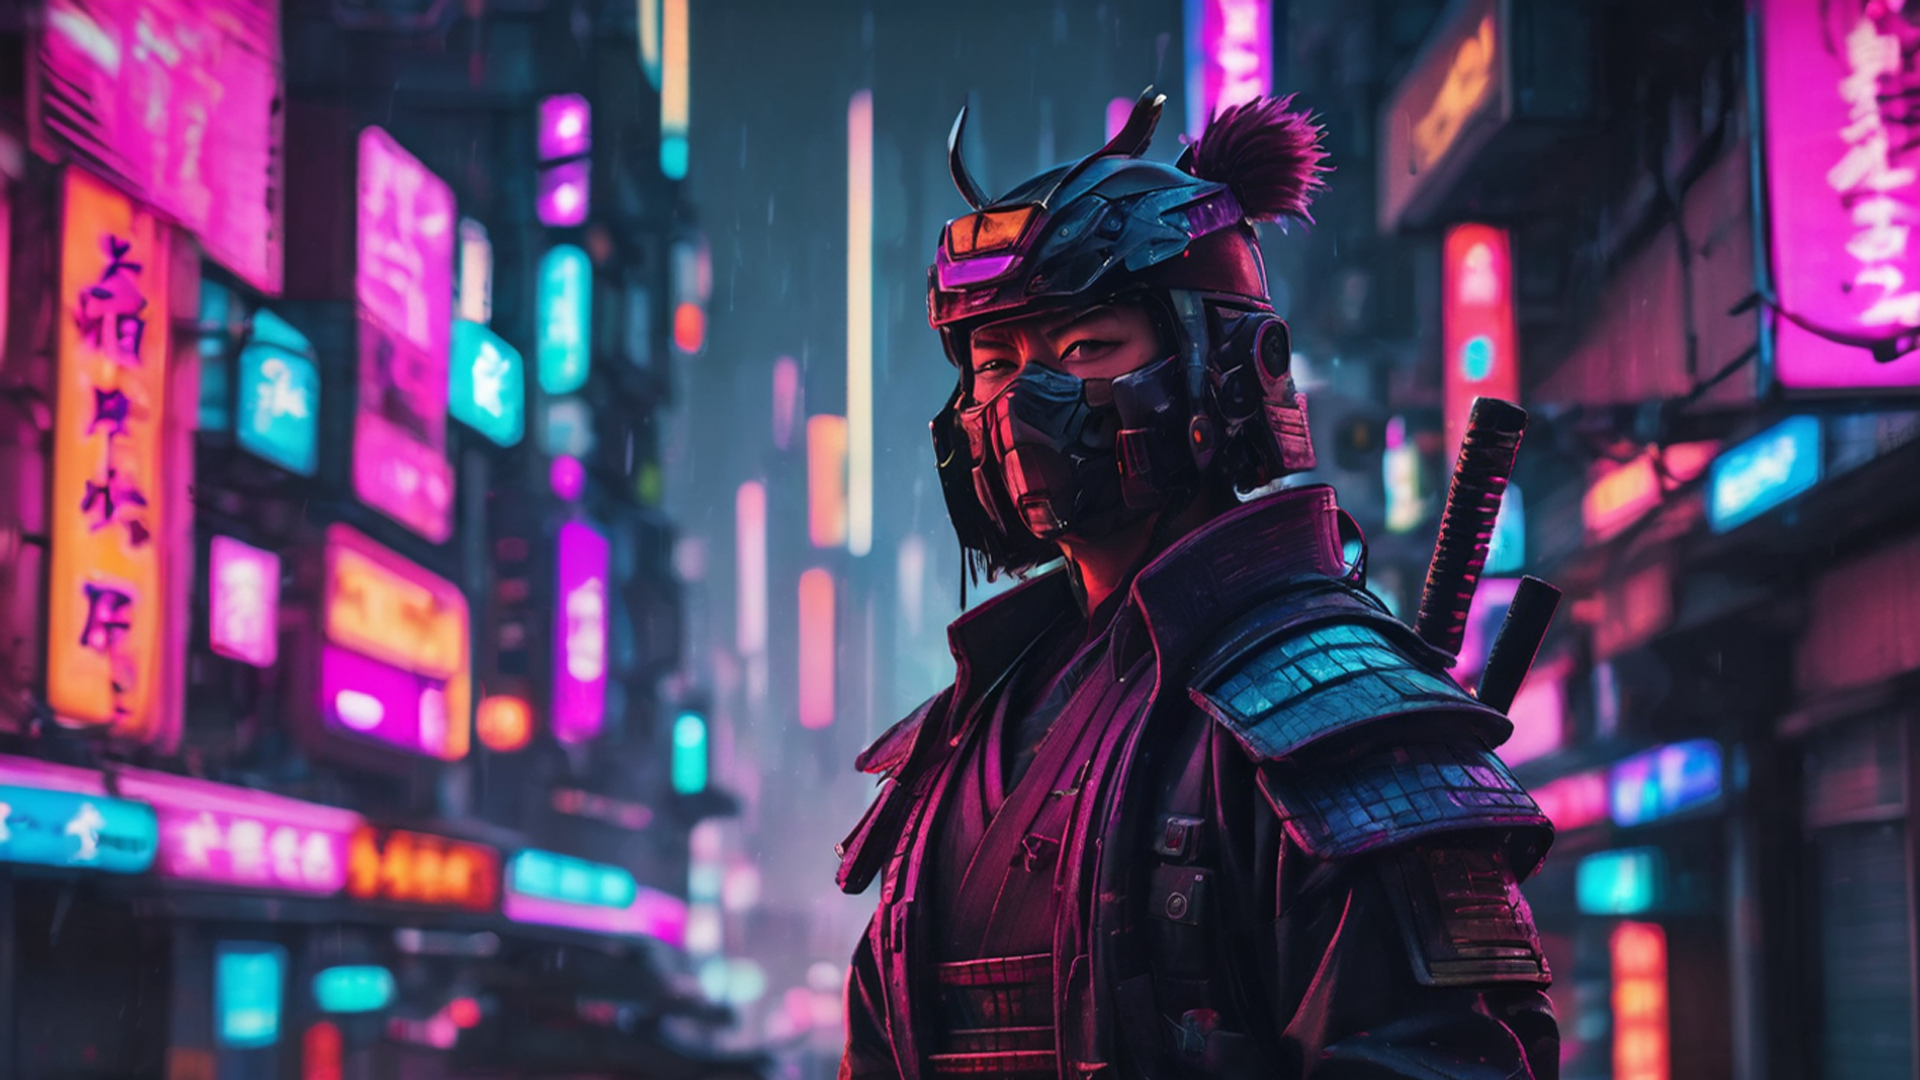 General 1920x1080 Samurai (Cyberpunk 2077) samurai AI art futuristic futuristic city synthwave cyber city building looking at viewer blurred blurry background